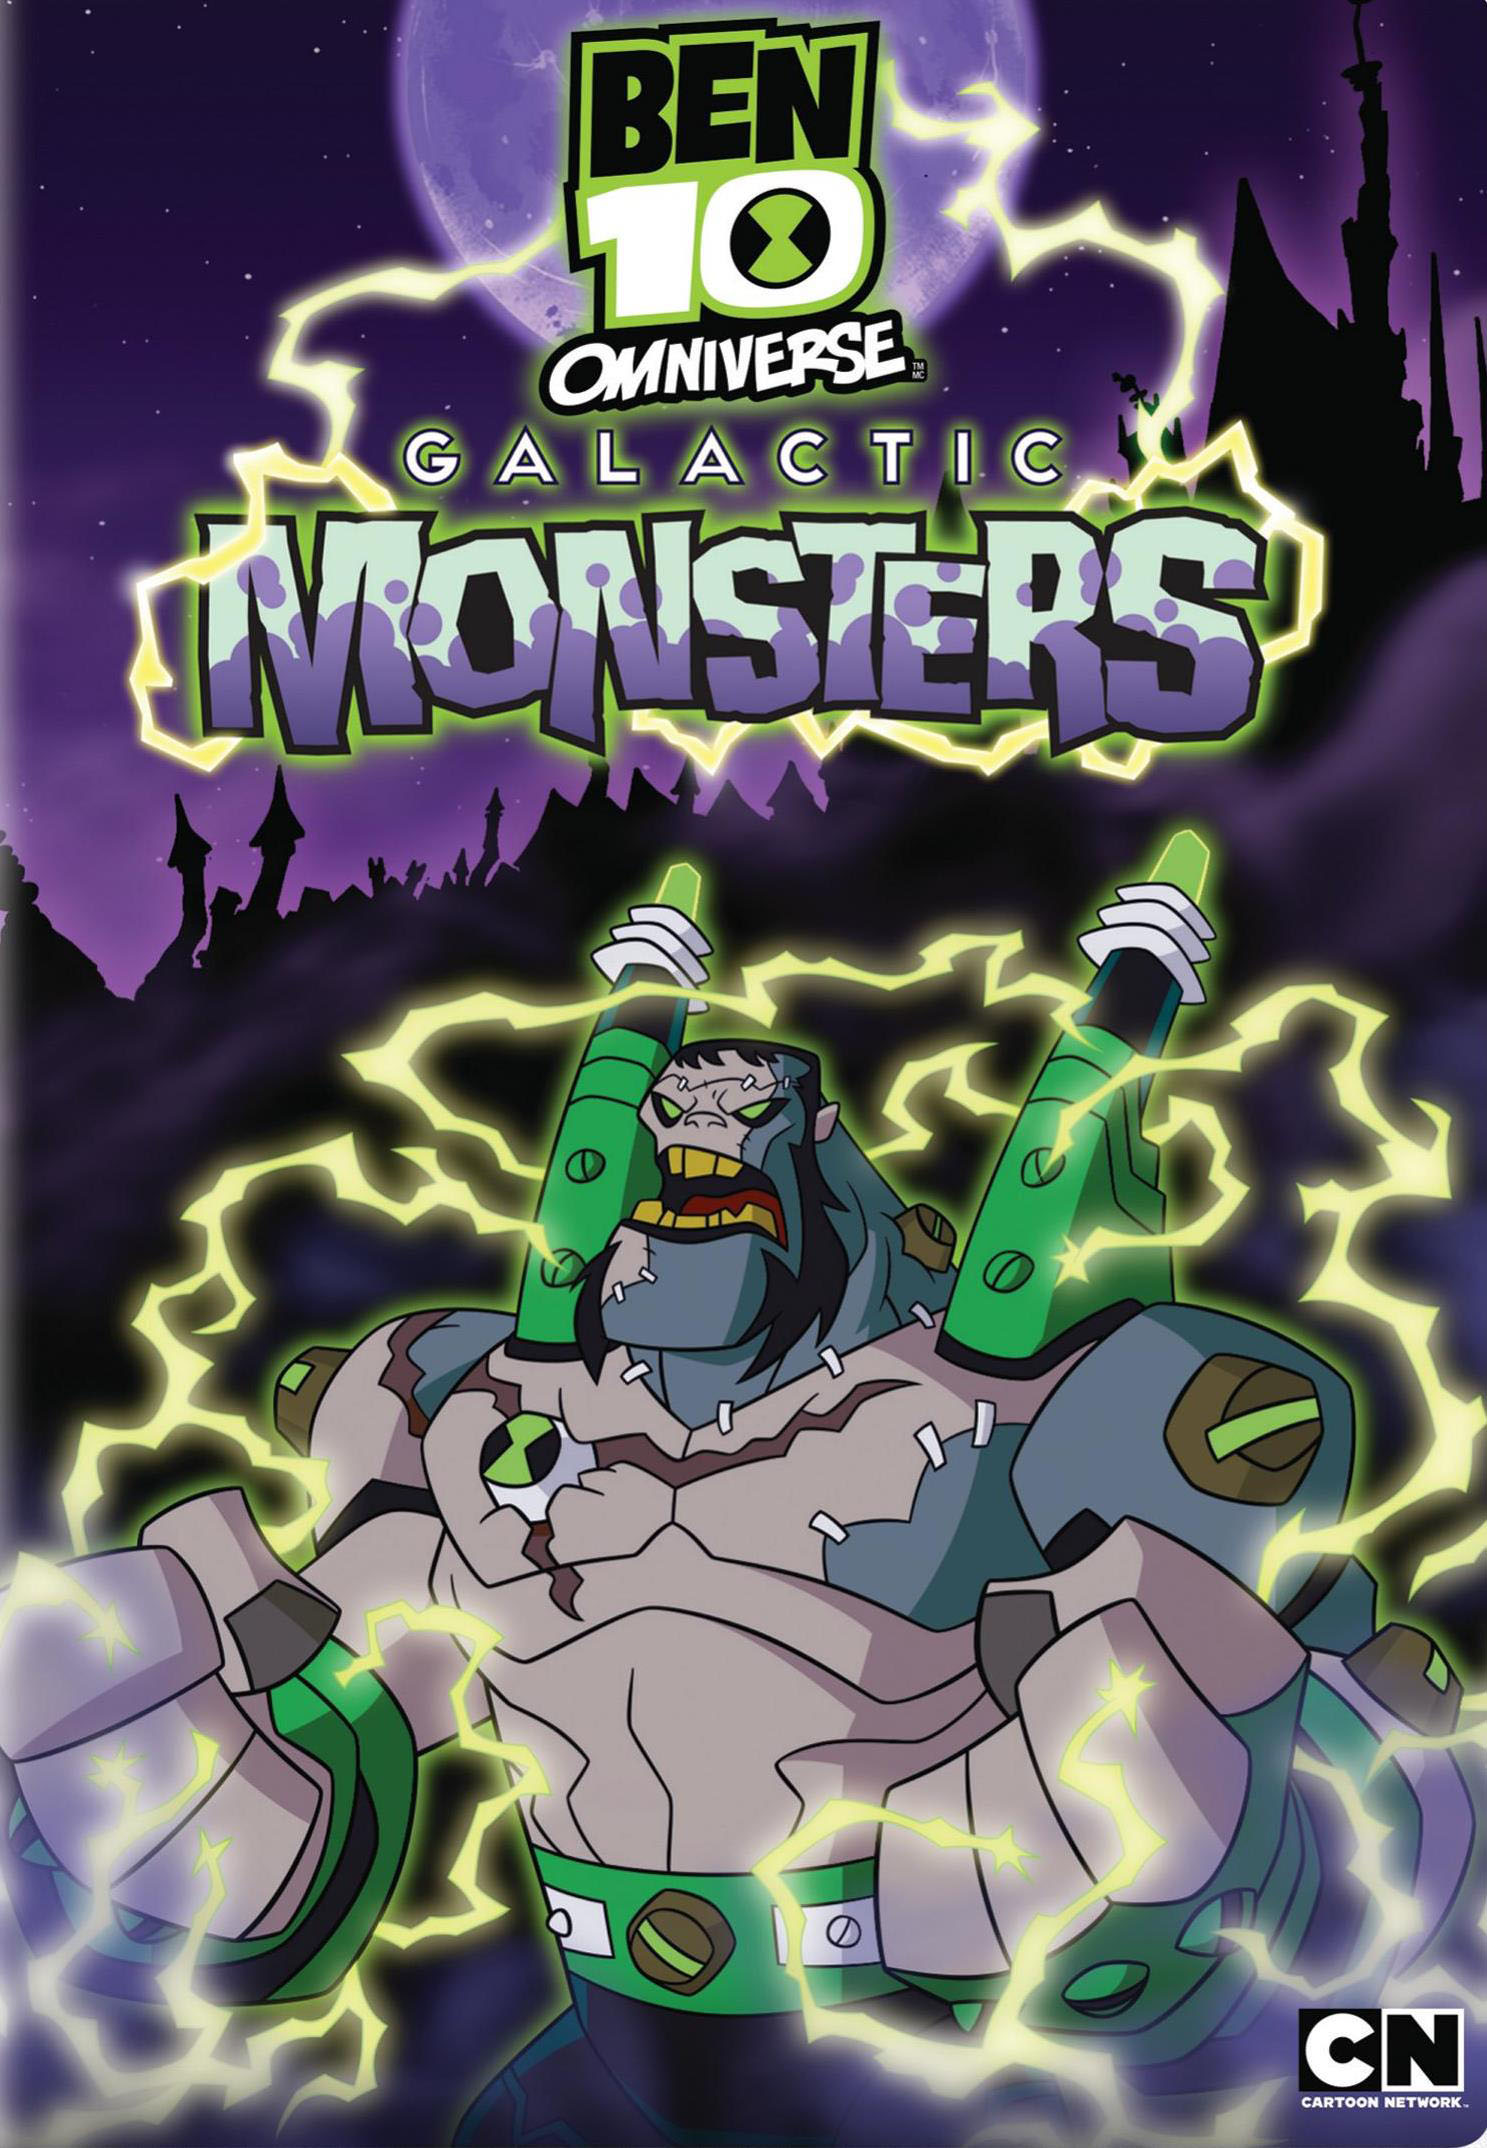 Ben 10: Omniverse Galactic Monsters [2 Discs] - Best Buy